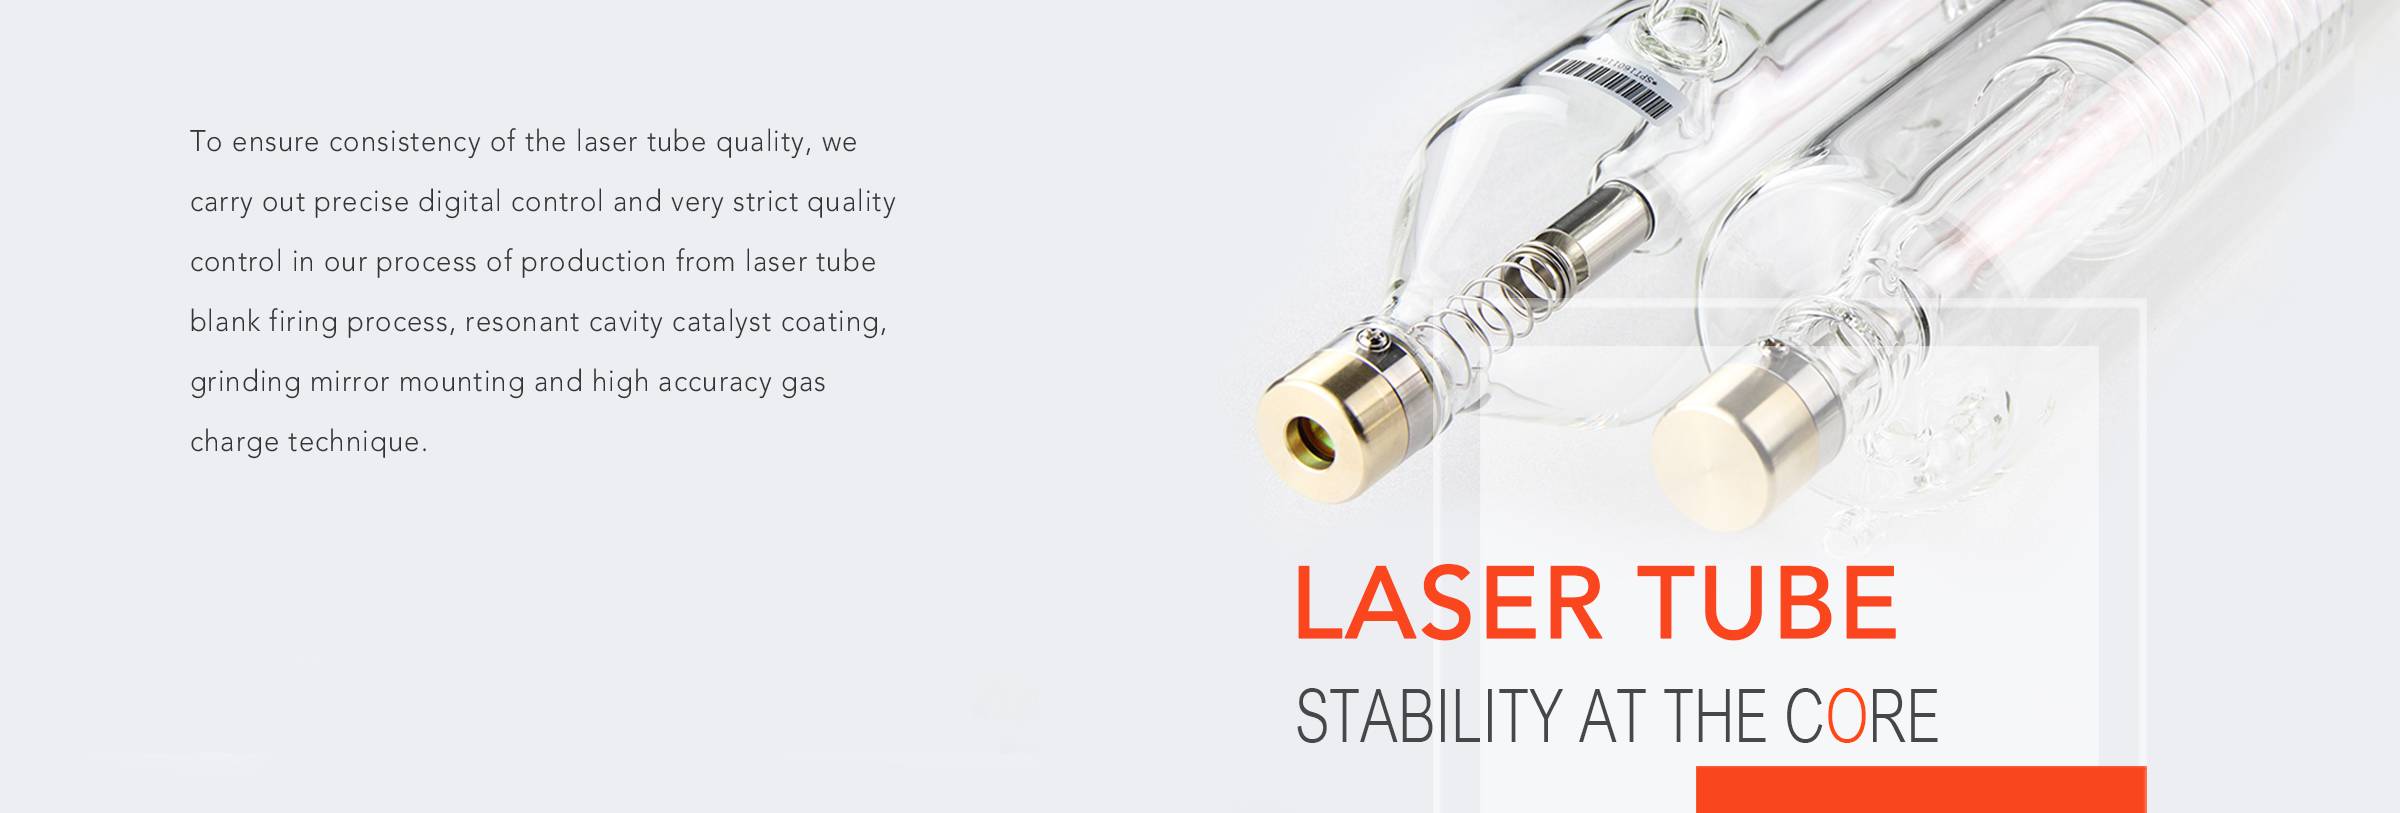 SPT Lazer, co2 lazer, co2 lazer tüpü, co2 lazer lens, lazer tüp üreticisi, co2 lazer makinesi yedek parçaları, co2 lazer kiti, büyük boyutlu lazer işaretleme, 3D lazer işaretleme, dinamik lazer işaretleme